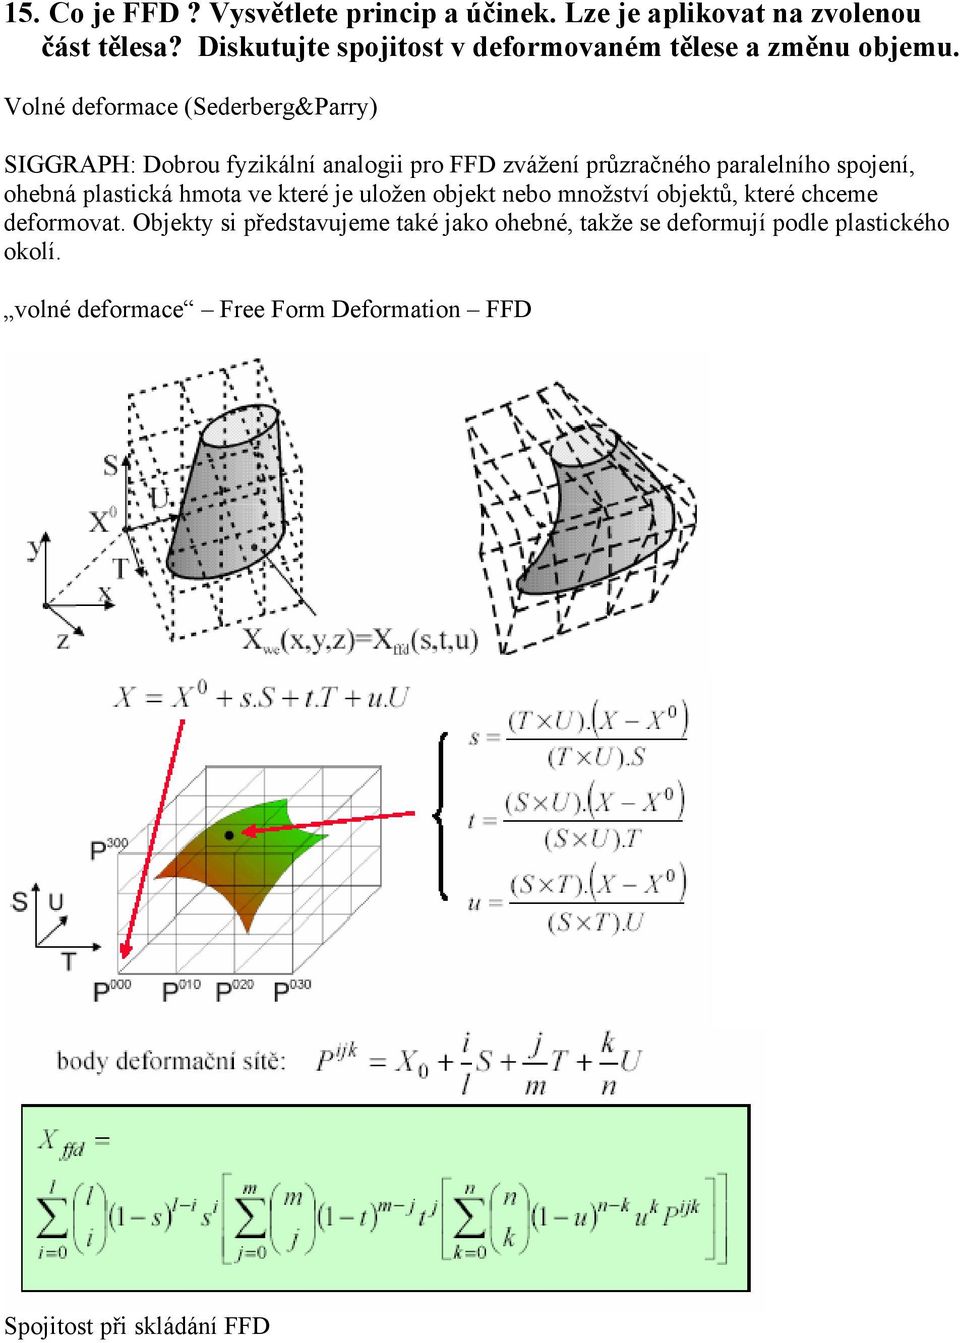 Volné deformace (Sederberg&Parry) SIGGRAPH: Dobrou fyzikální analogii pro FFD zvážení průzračného paralelního spojení, ohebná